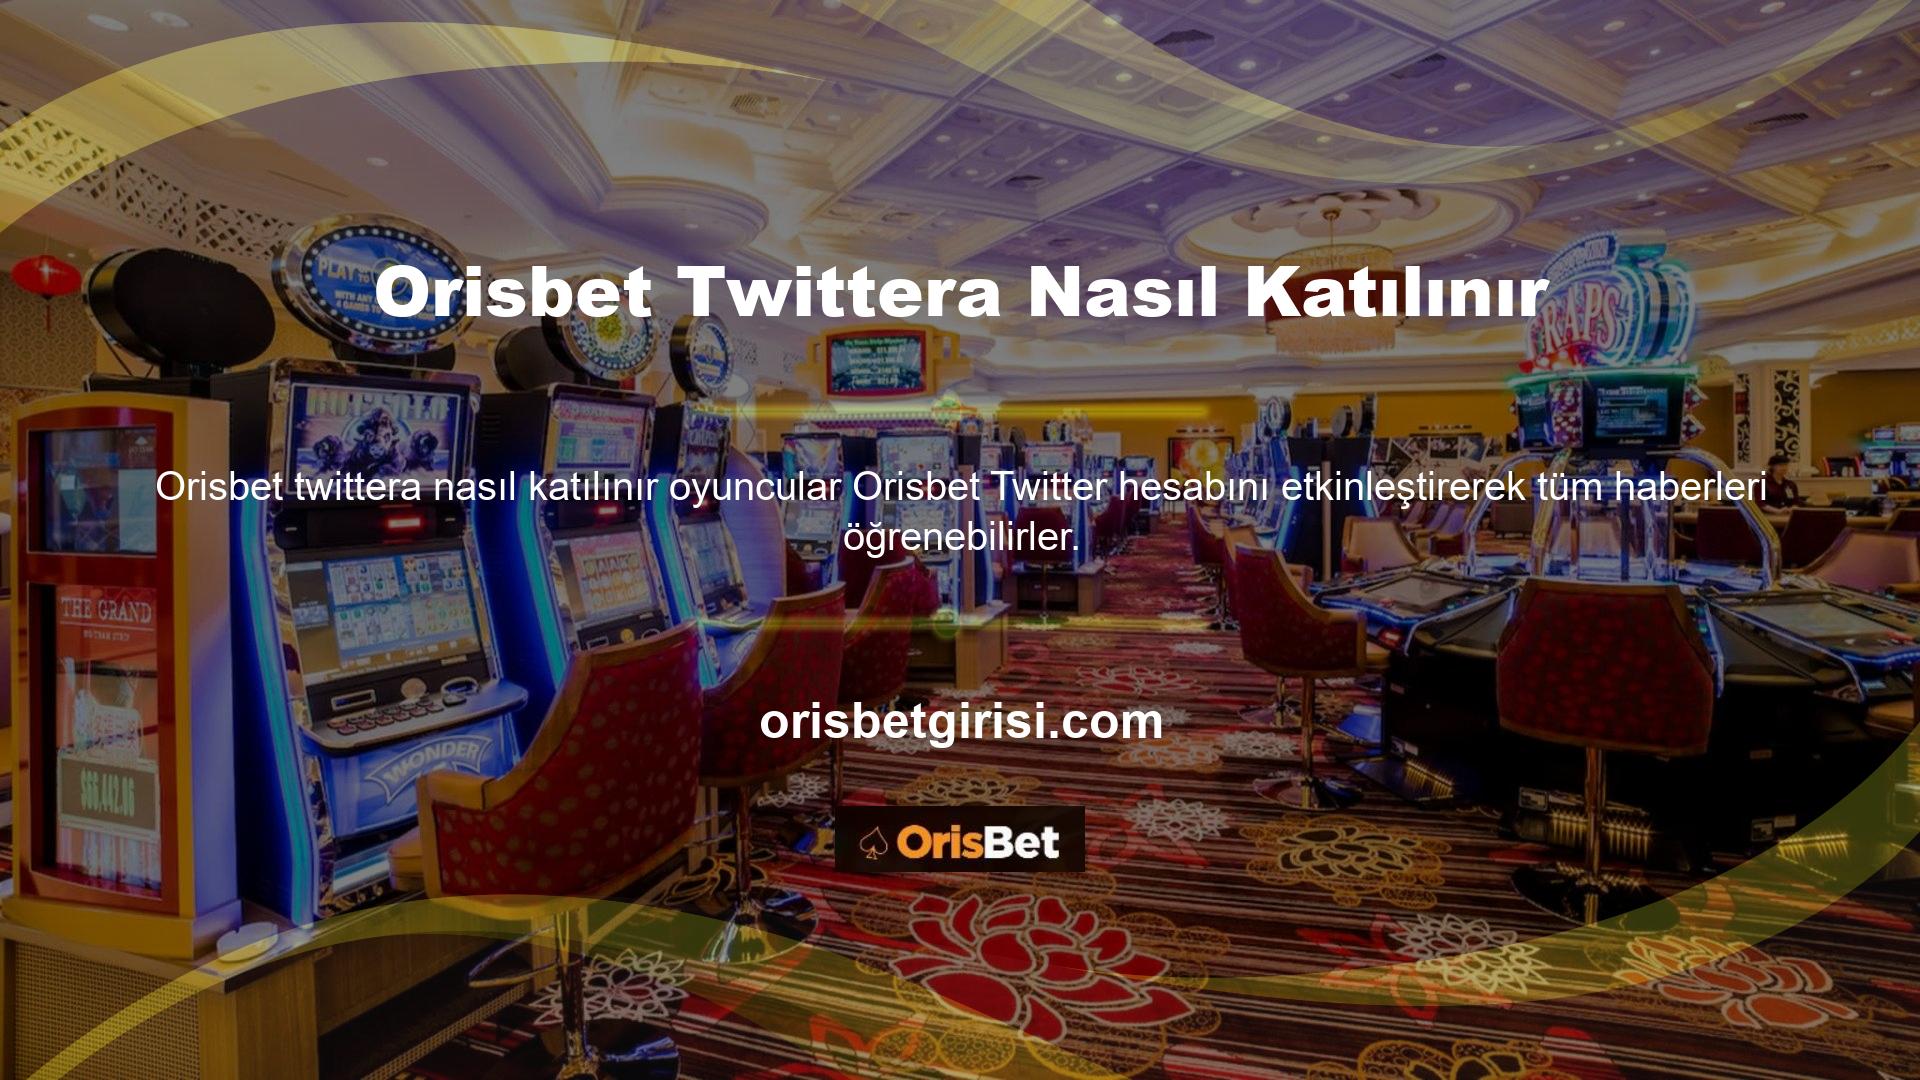 Tüm anlık bonusları ve Orisbet yeni Twitter giriş adresini görmek için Orisbet Twitter hesabını takip edin ve 7/24 iletişimde kalın